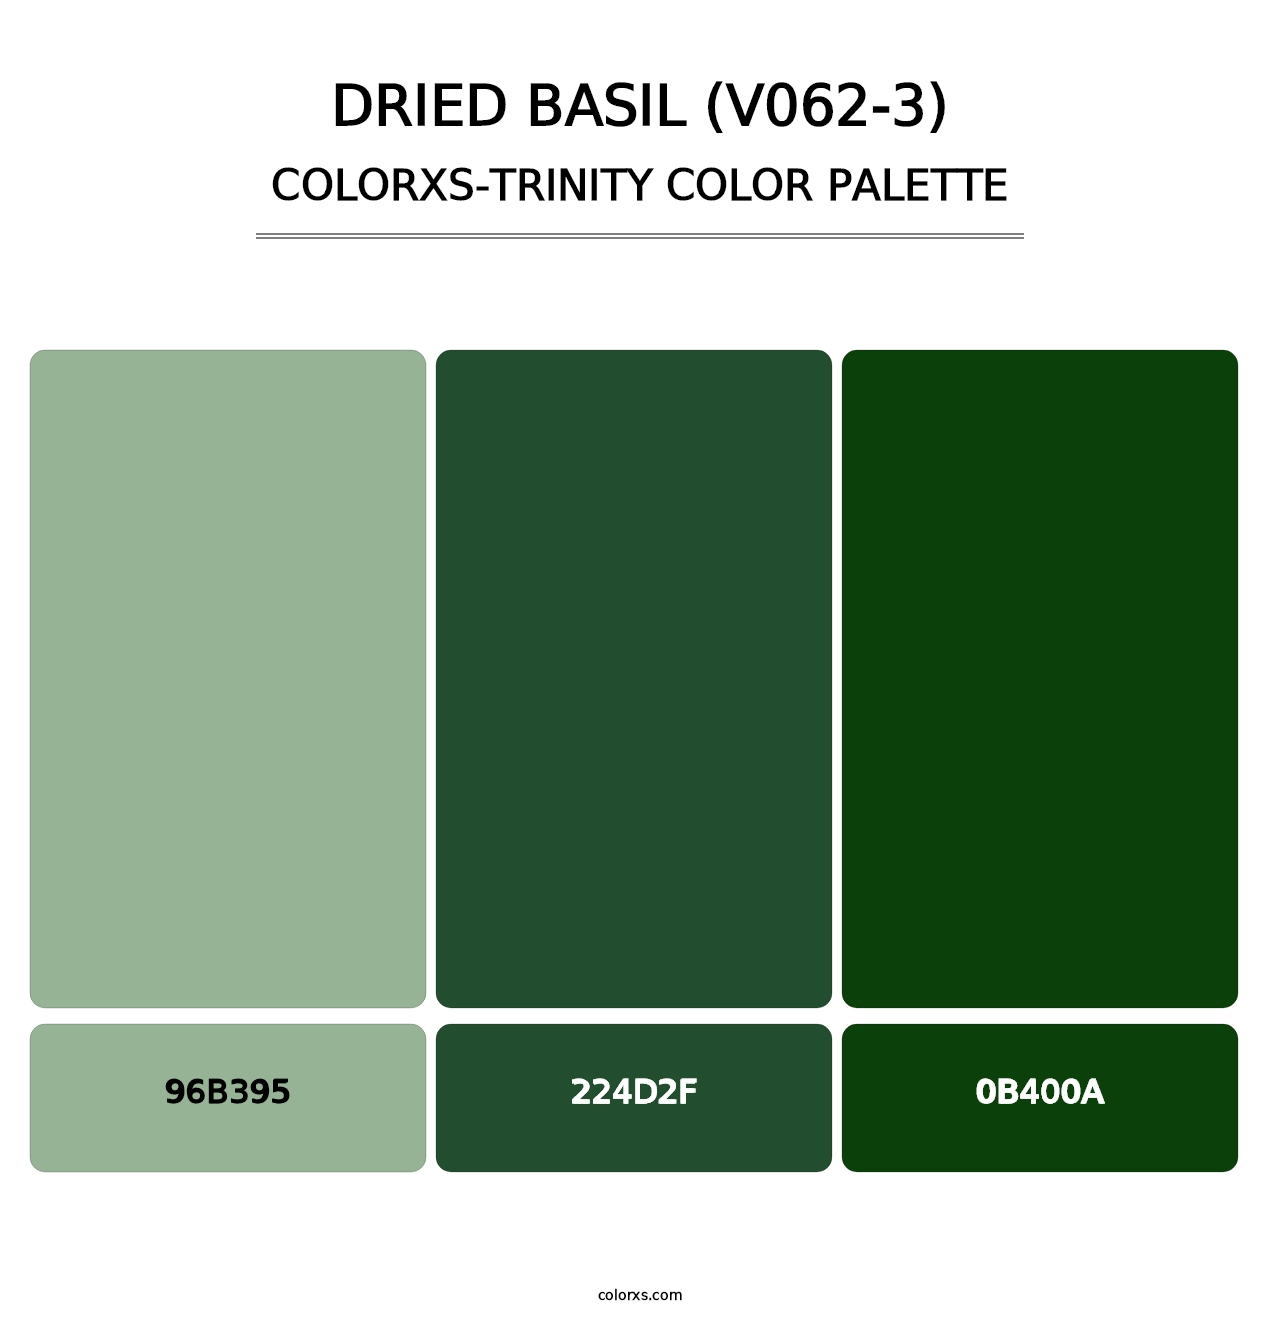 Dried Basil (V062-3) - Colorxs Trinity Palette